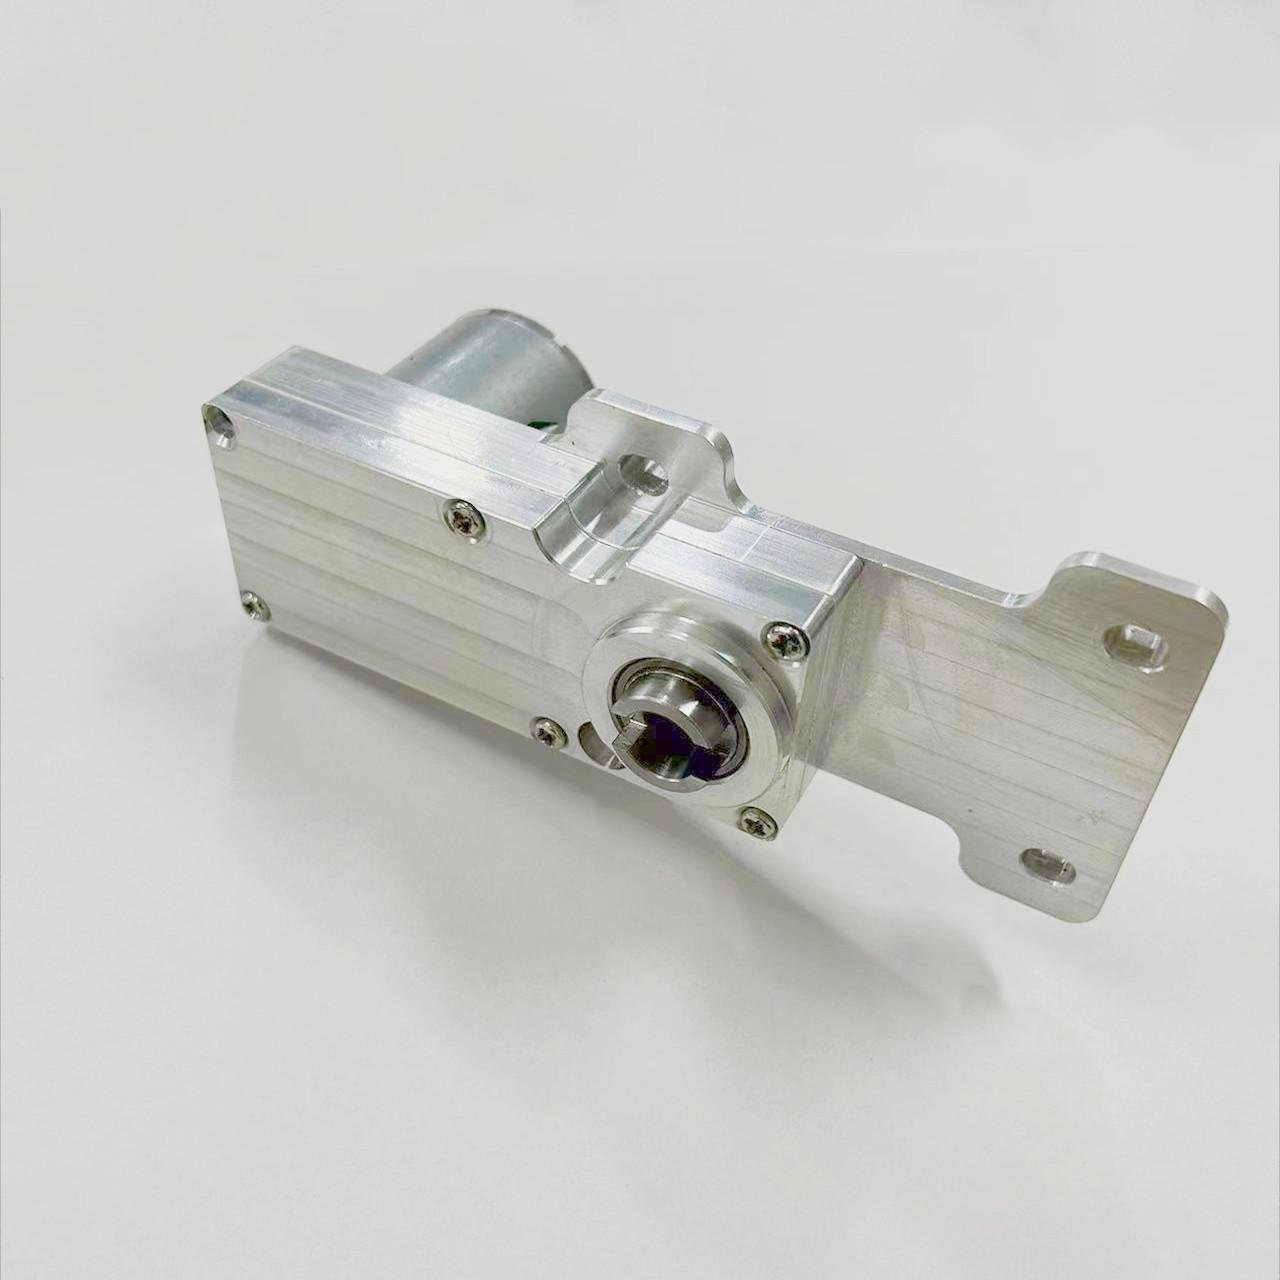 JMT-40 Clutch geared motors are used in vault door  5